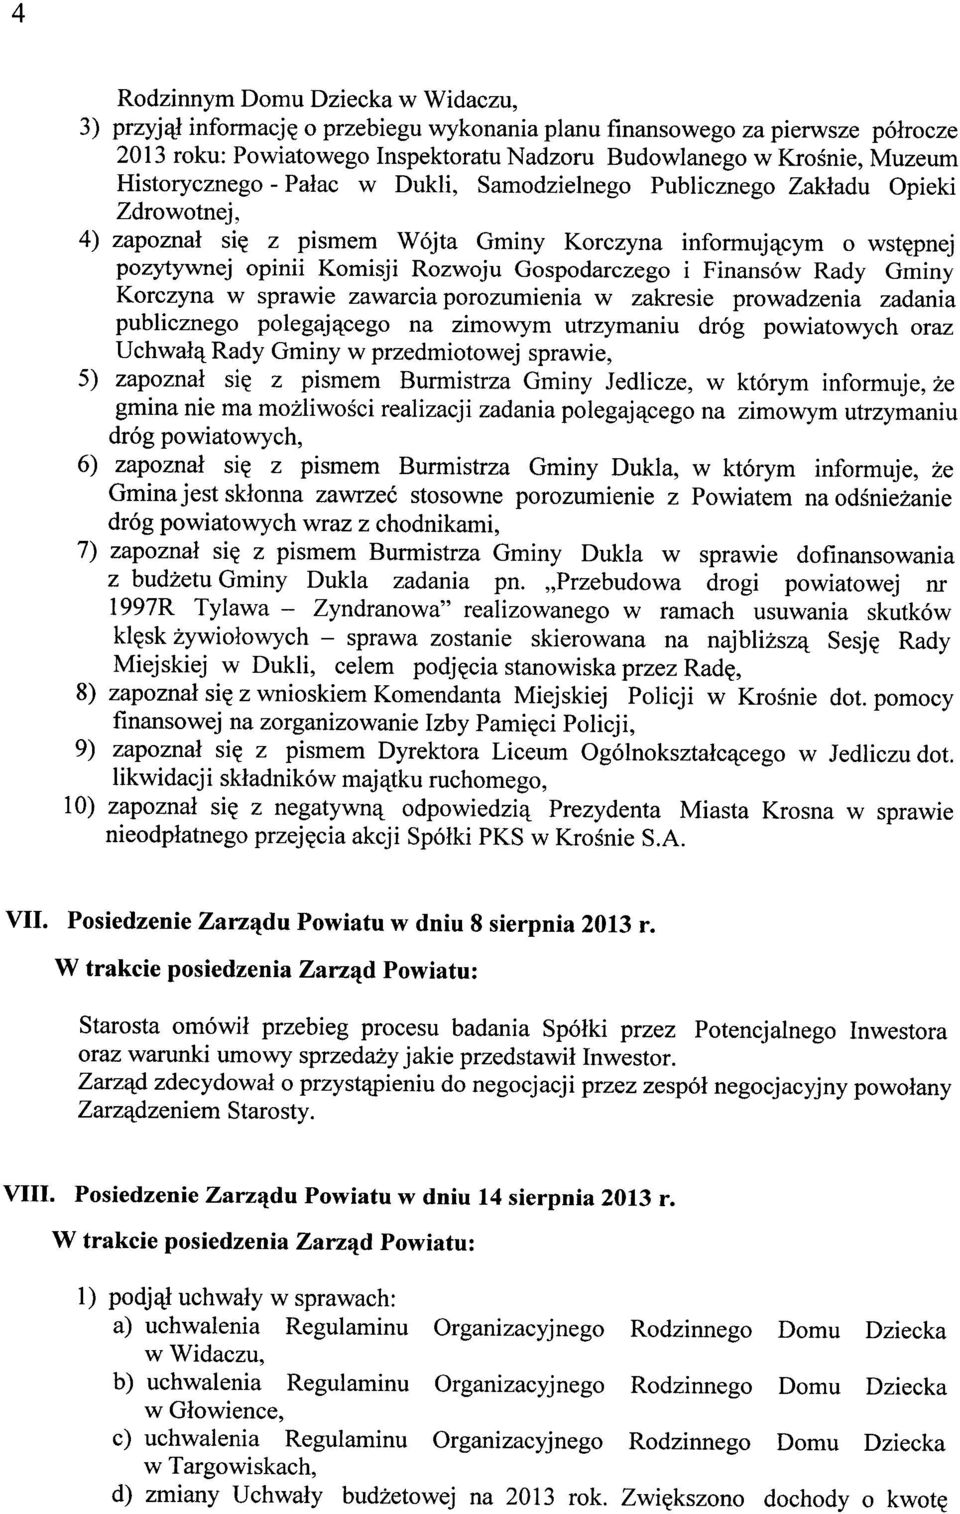 Gospodarczego i Finansów Rady Gminy Korczyna w sprawie zawarcia porozumienia w zakresie prowadzenia zadania publicznego polegającego na zimowym utrzymaniu dróg powiatowych oraz Uchwałą Rady Gminy w